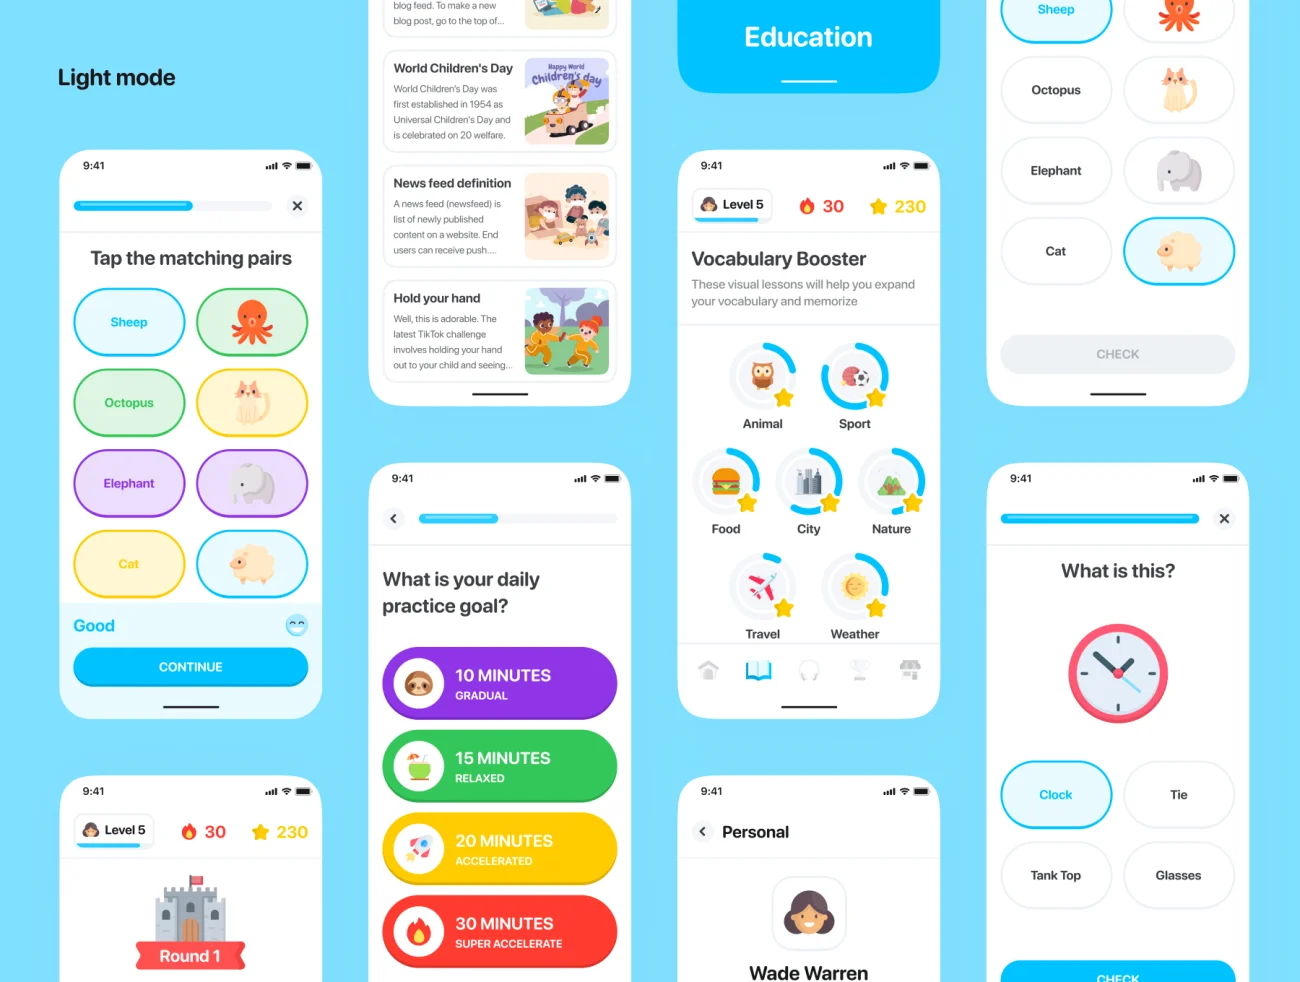 80屏儿童教育应用UI设计套件 Education App UI Kit-UI/UX、ui套件、主页、介绍、卡片式、应用、注册-到位啦UI